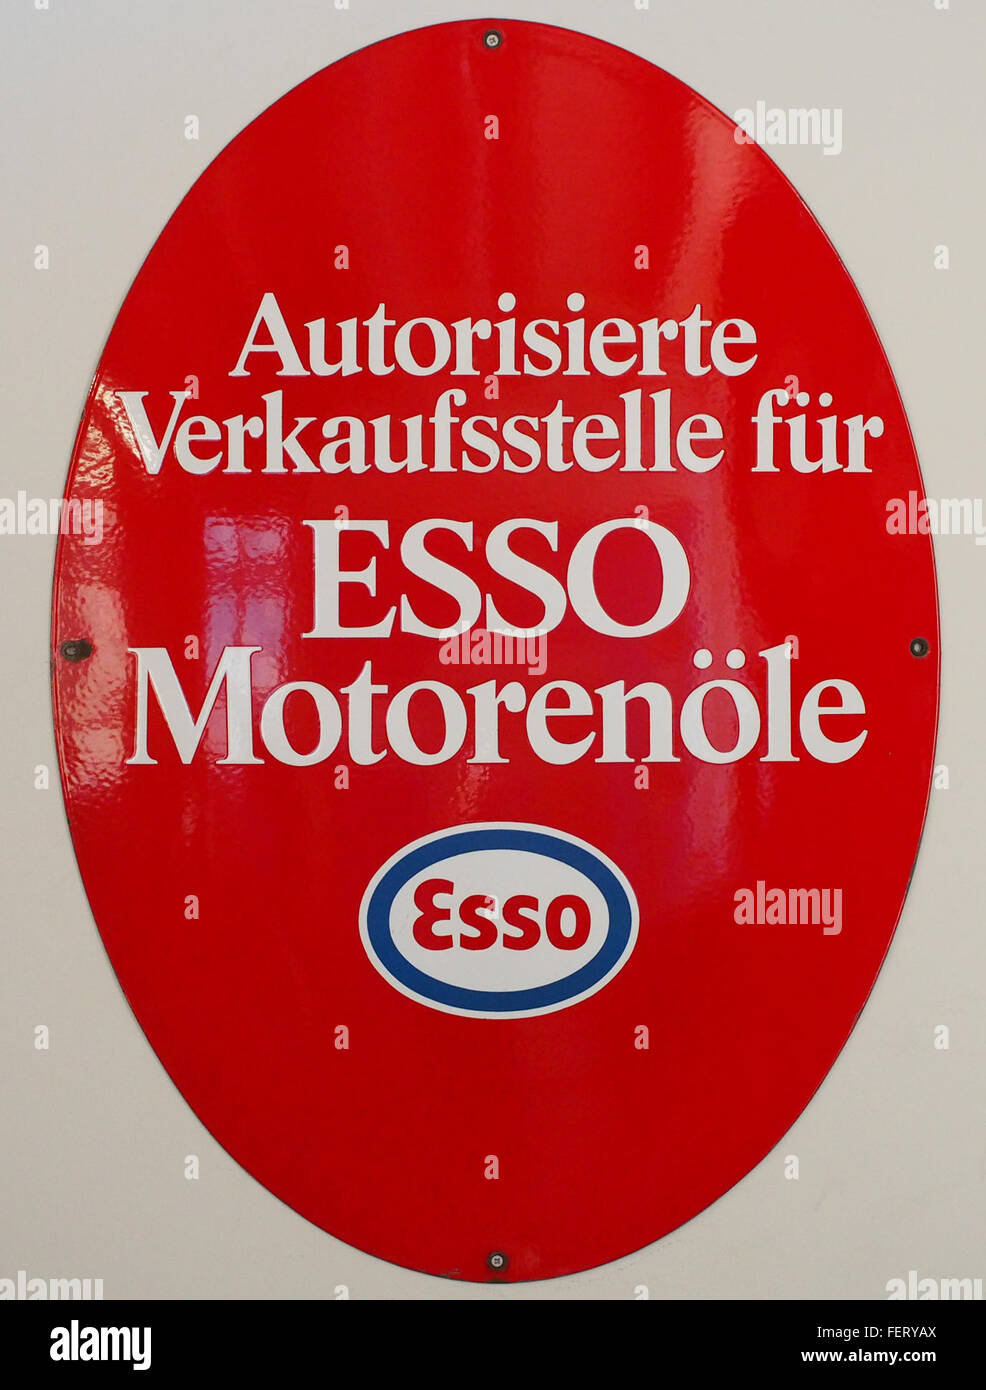 ESSO MotorenC3B6le Emaille Werbeschild Foto Stock